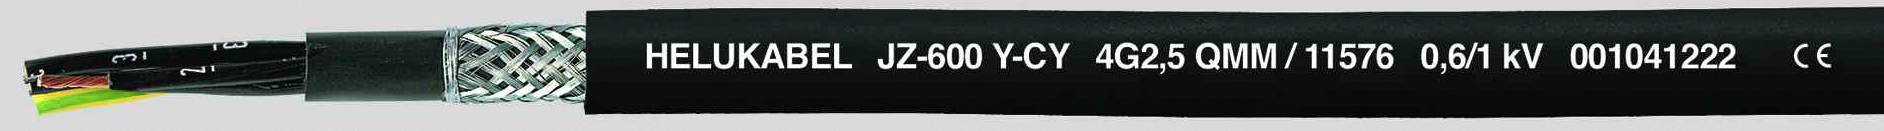 HELUKABEL JZ-600-Y-CY Steuerleitung 3 G 1.50 mm² Schwarz 11547-500 500 m